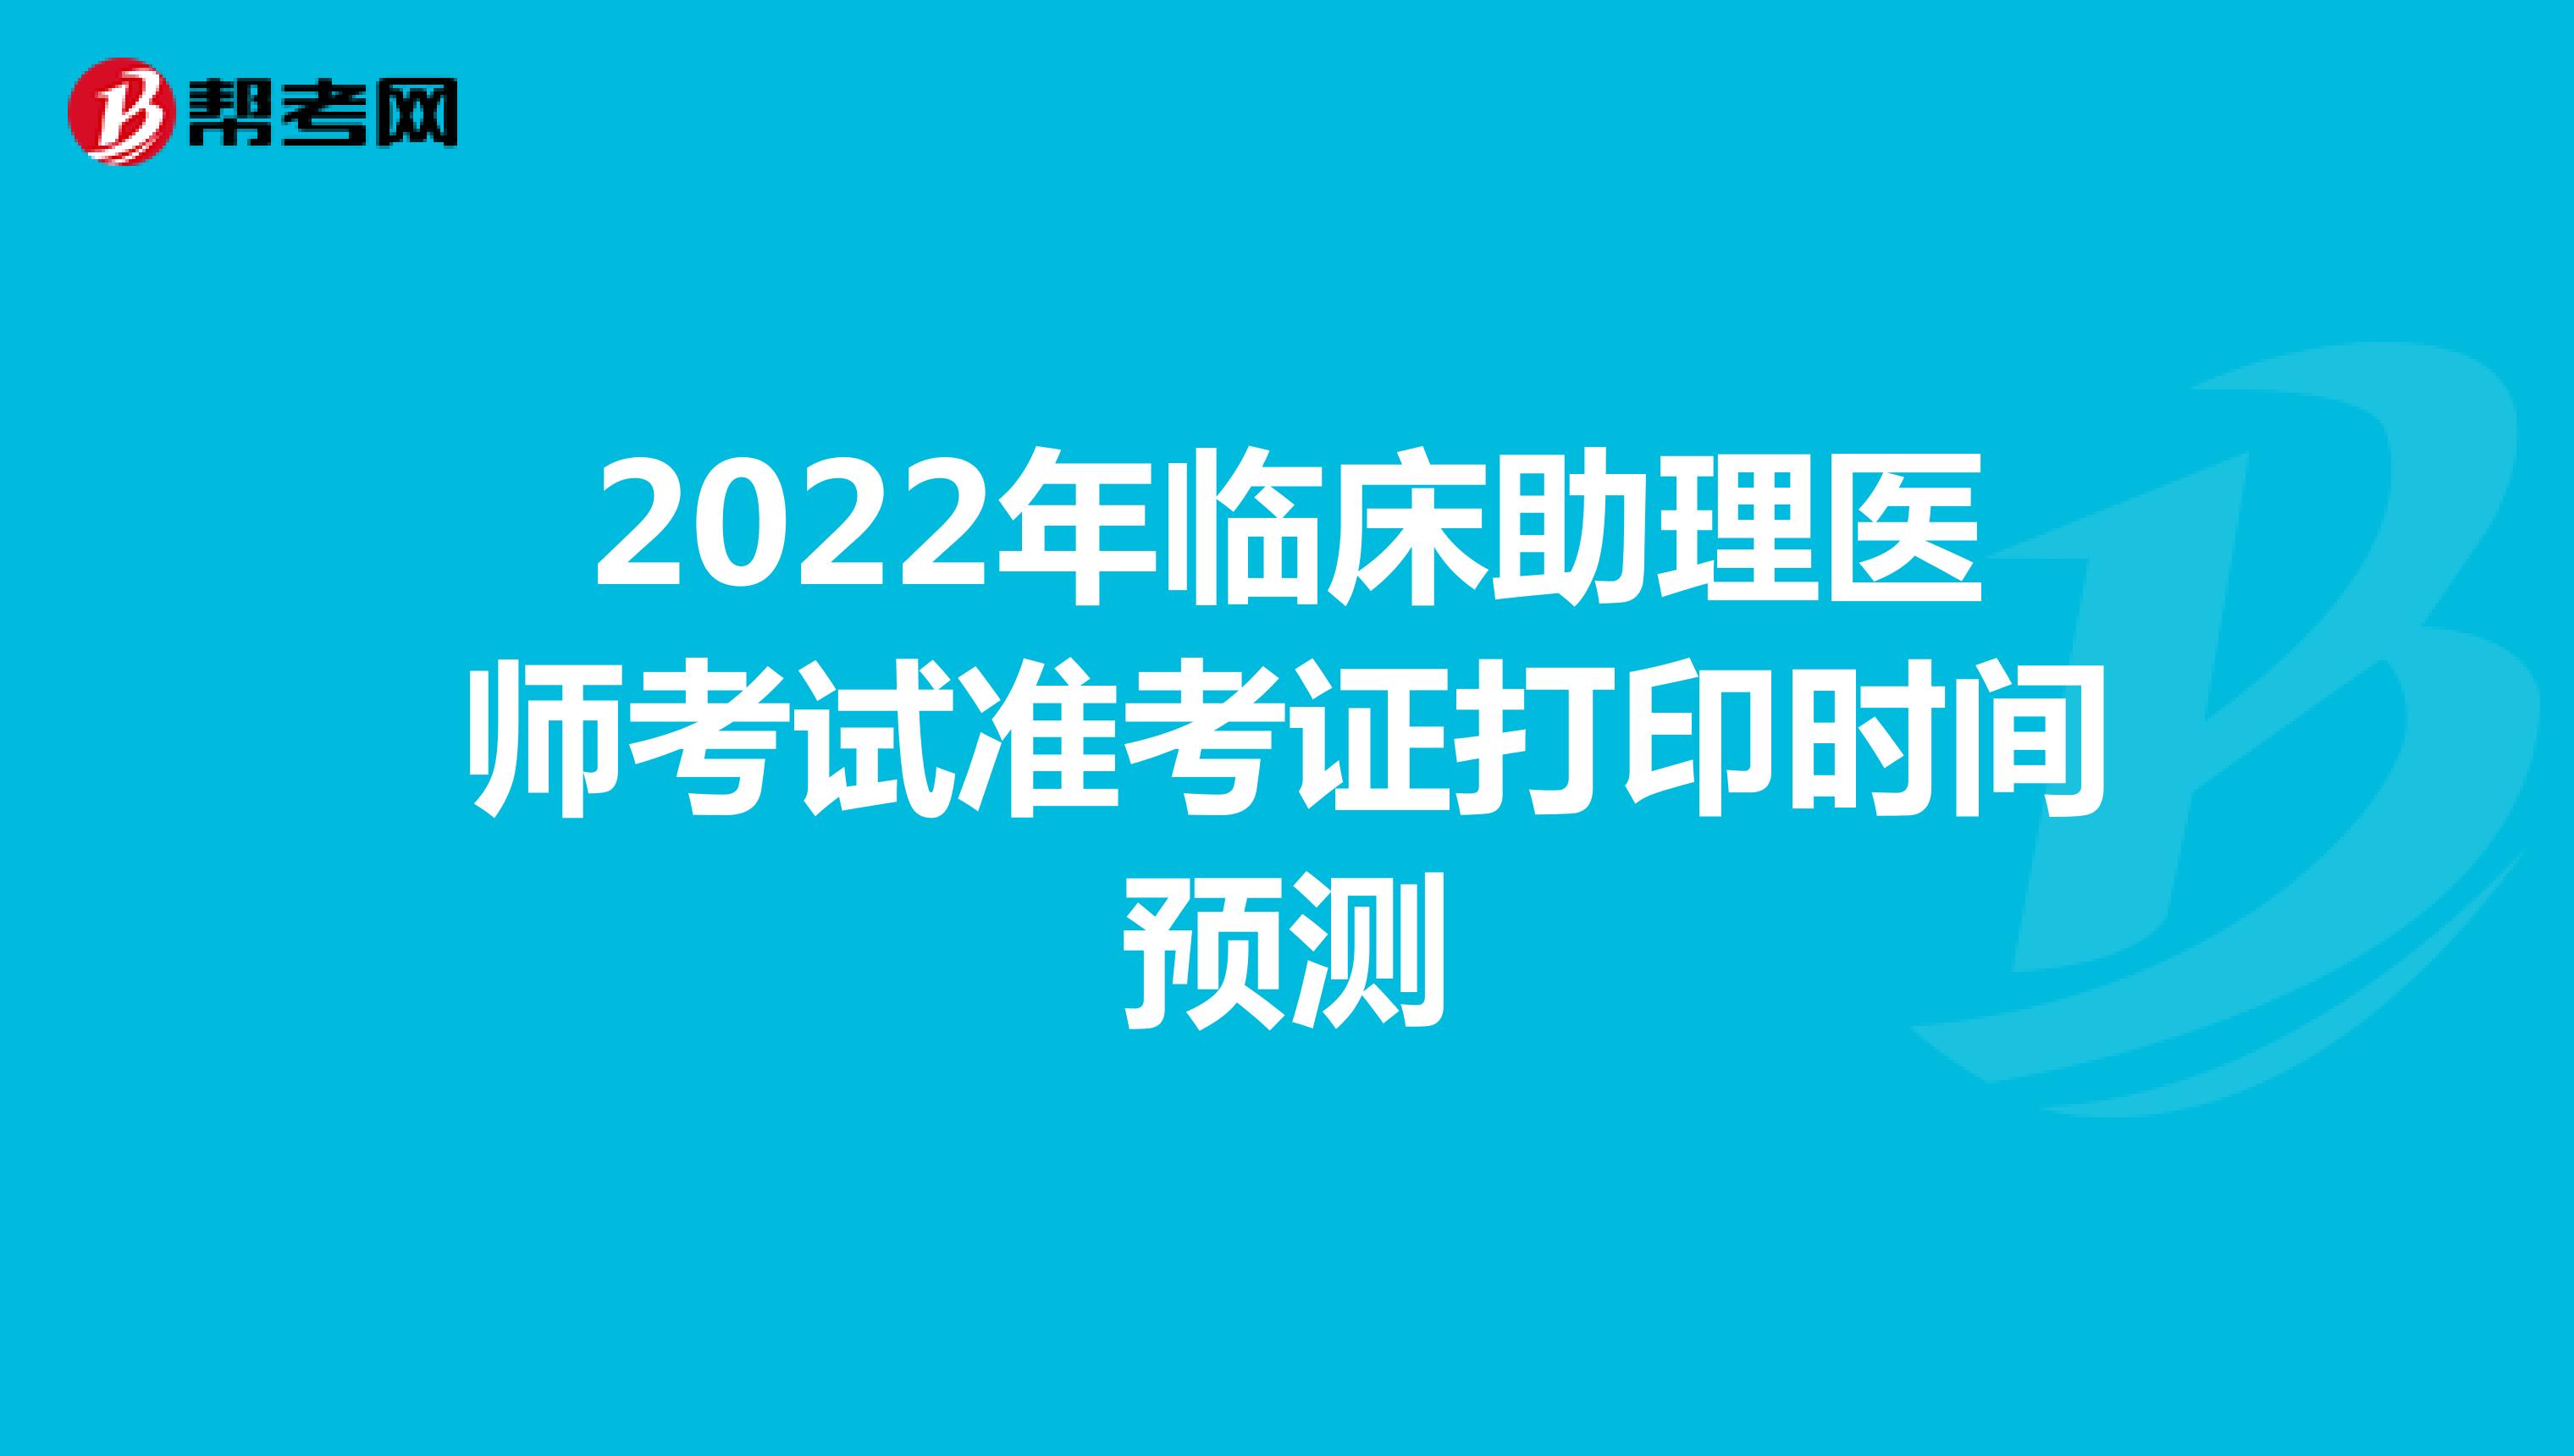 2022年临床助理医师考试准考证打印时间预测